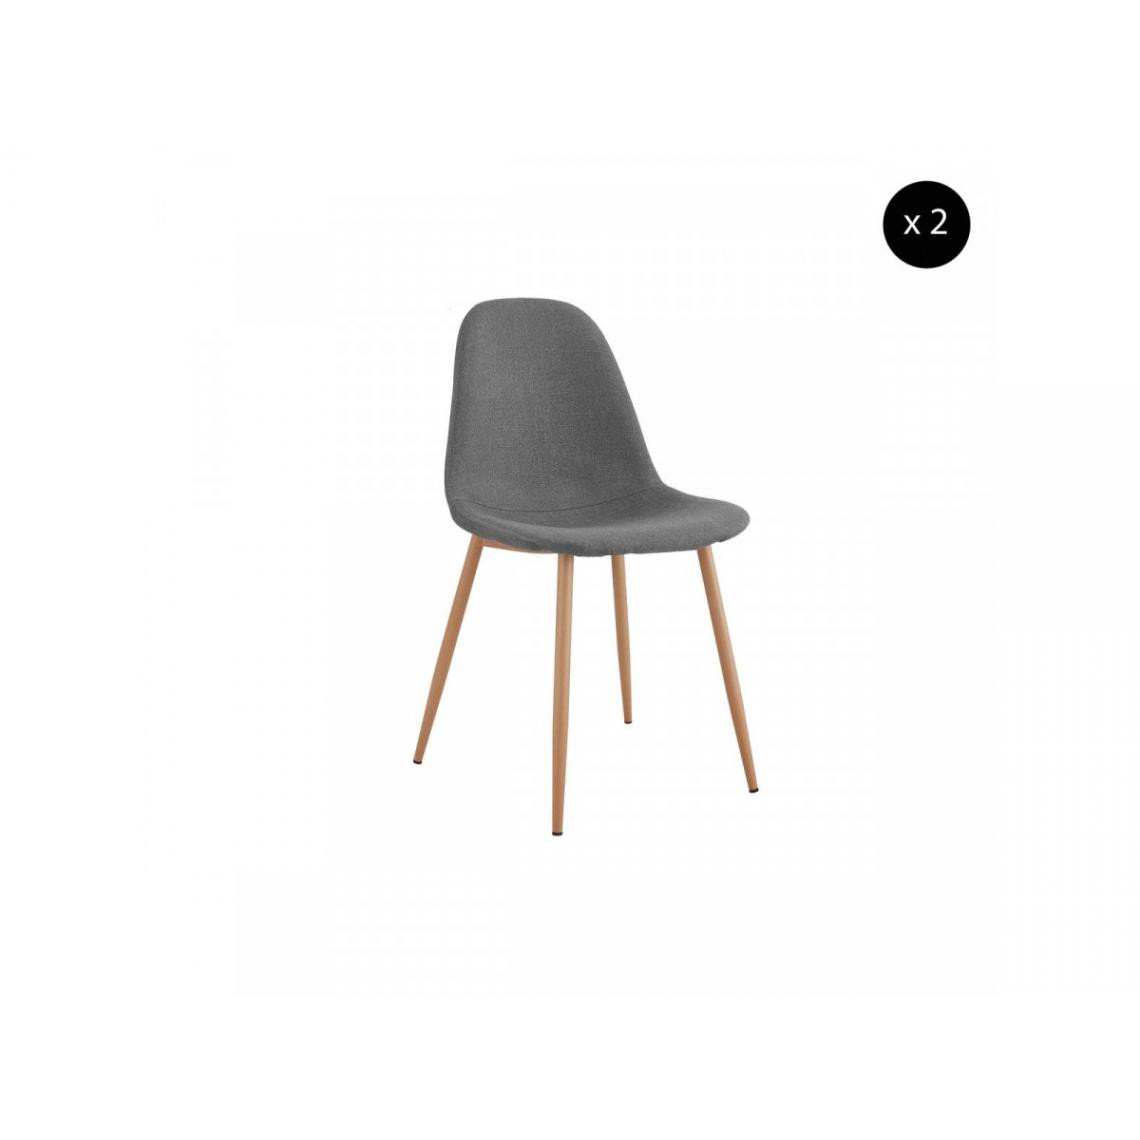 Bobochic - BOBOCHIC Lot de 2 chaises en tissu gris APLO métal impression bois - Chaises